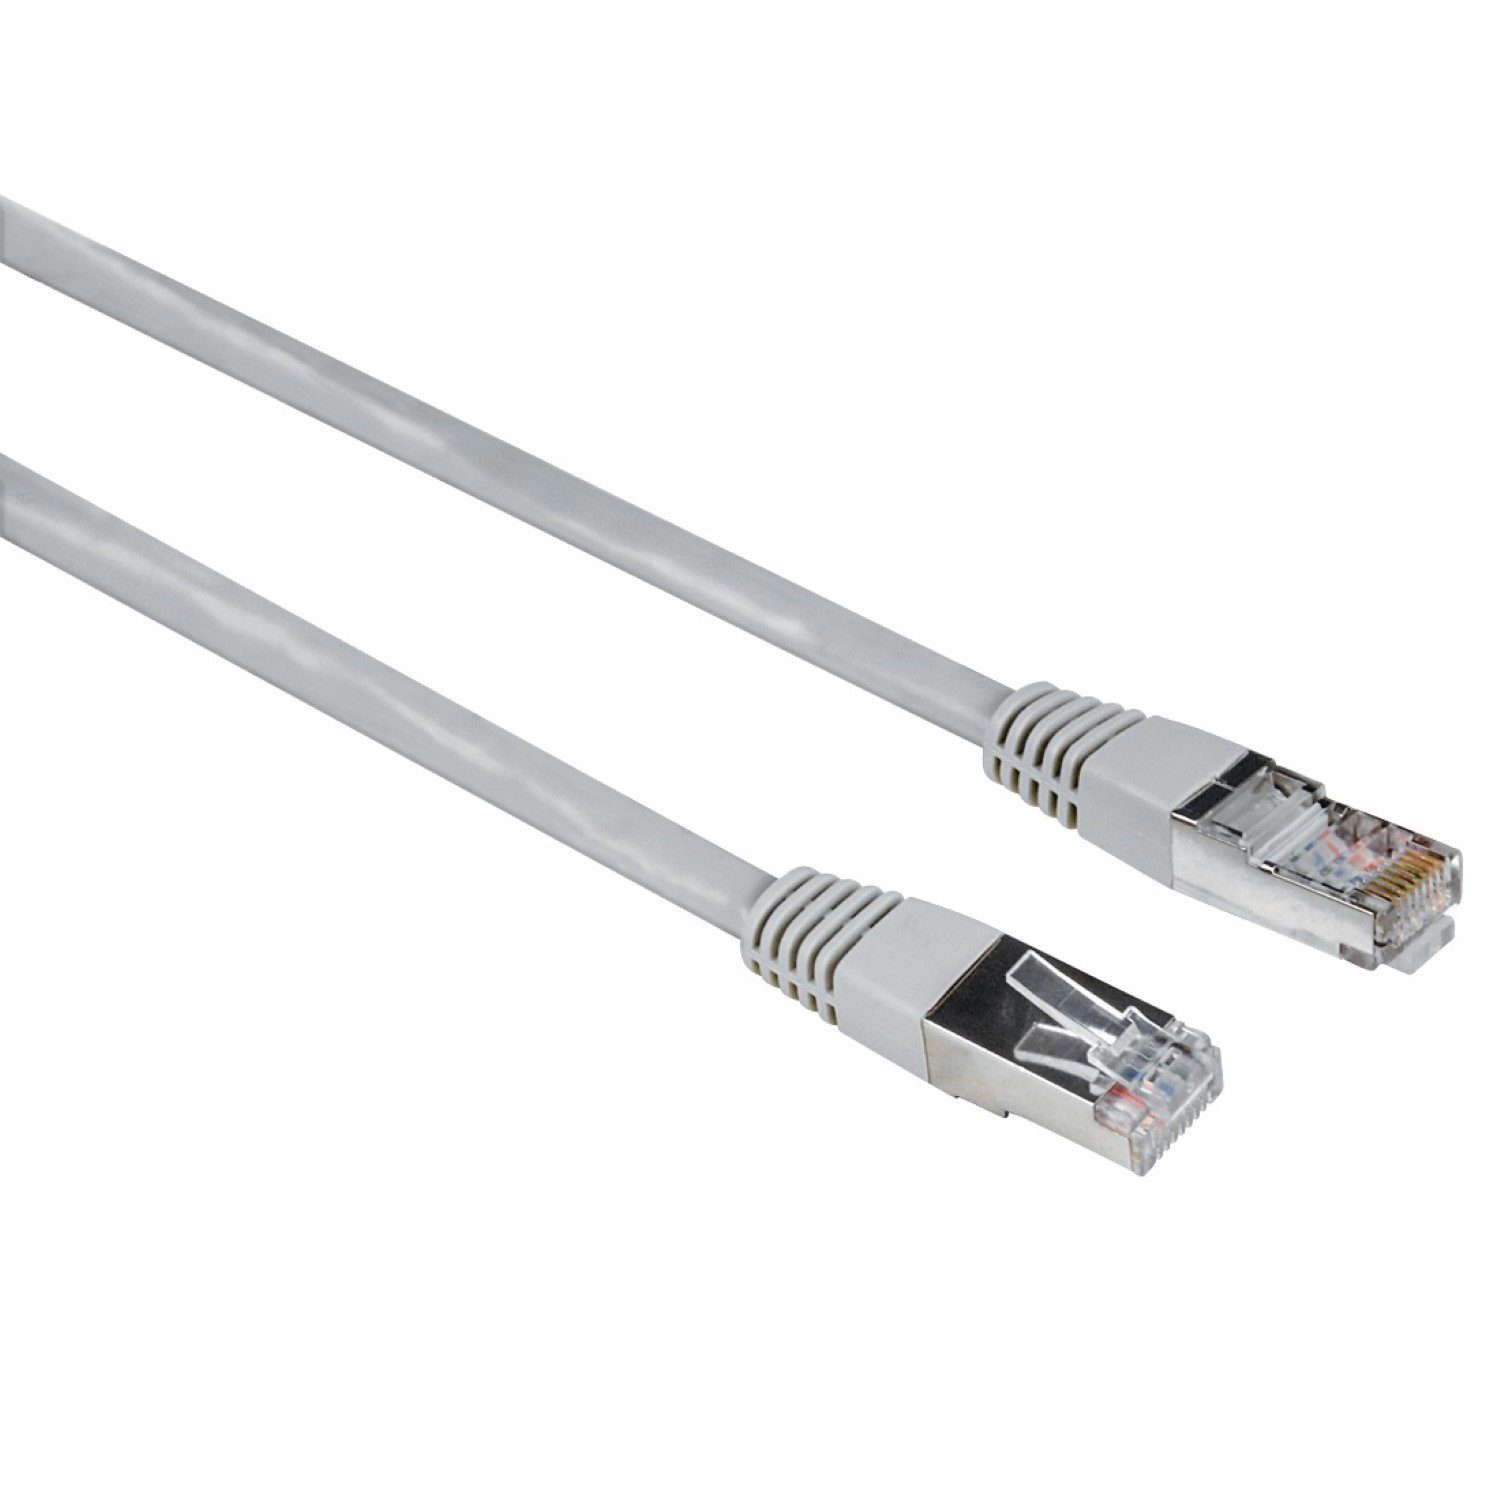 Hama 5m Netzwerk-Kabel Cat5e STP Lan-Kabel Grau LAN-Kabel, RJ45, Kein (500 cm), Patch-Kabel Cat 5e Gigabit Ethernet